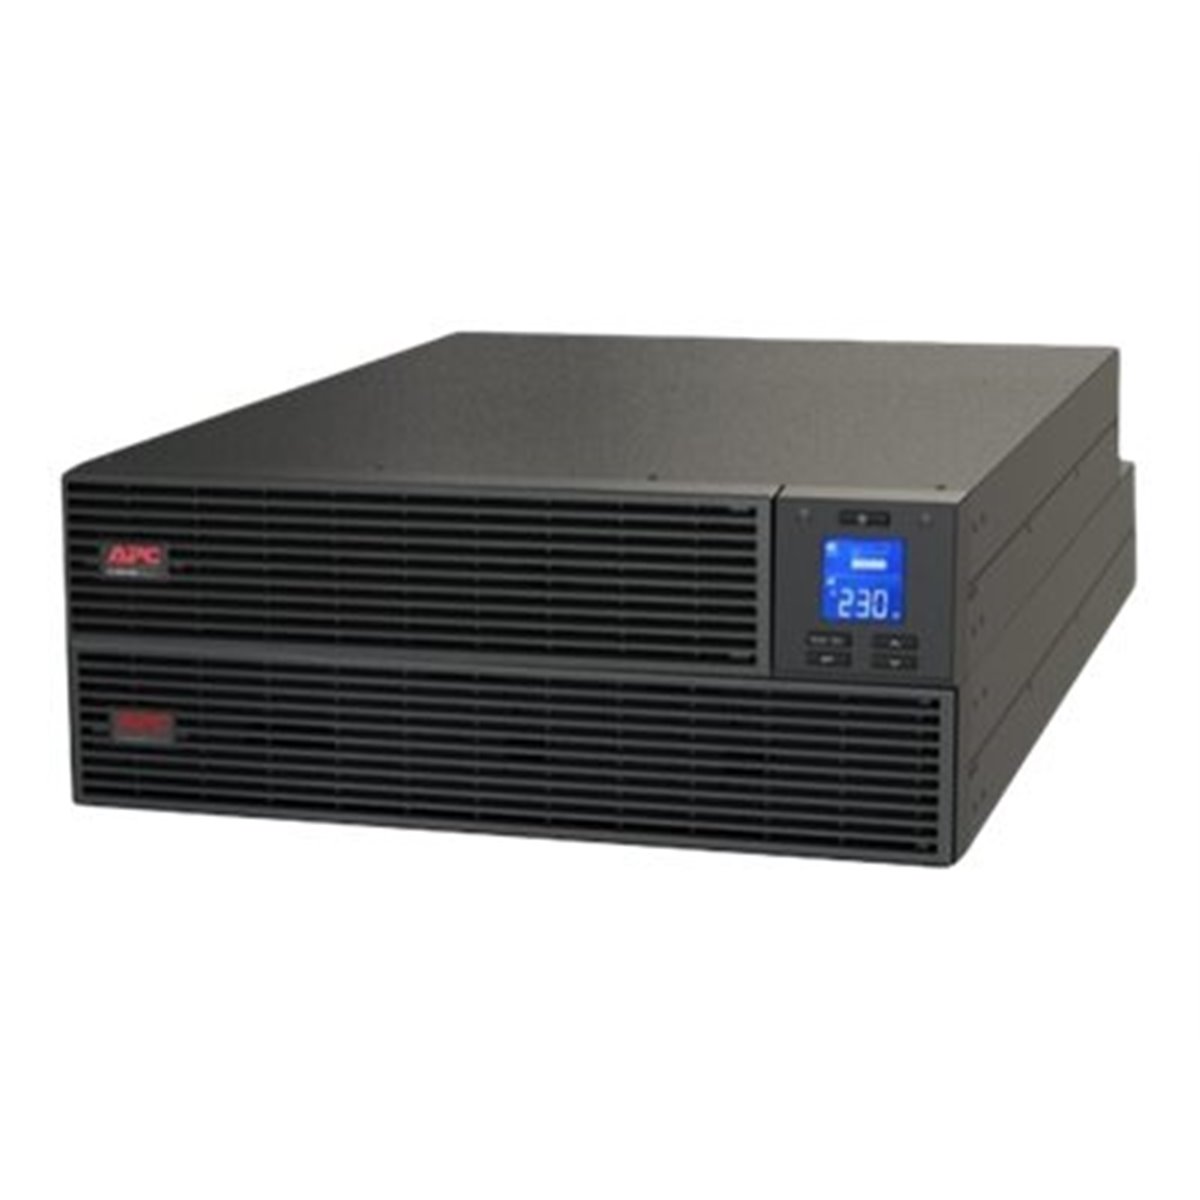 APC Easy Ups On-Line SRV 5000VA RM 230V - (Offline) UPS - Rack module